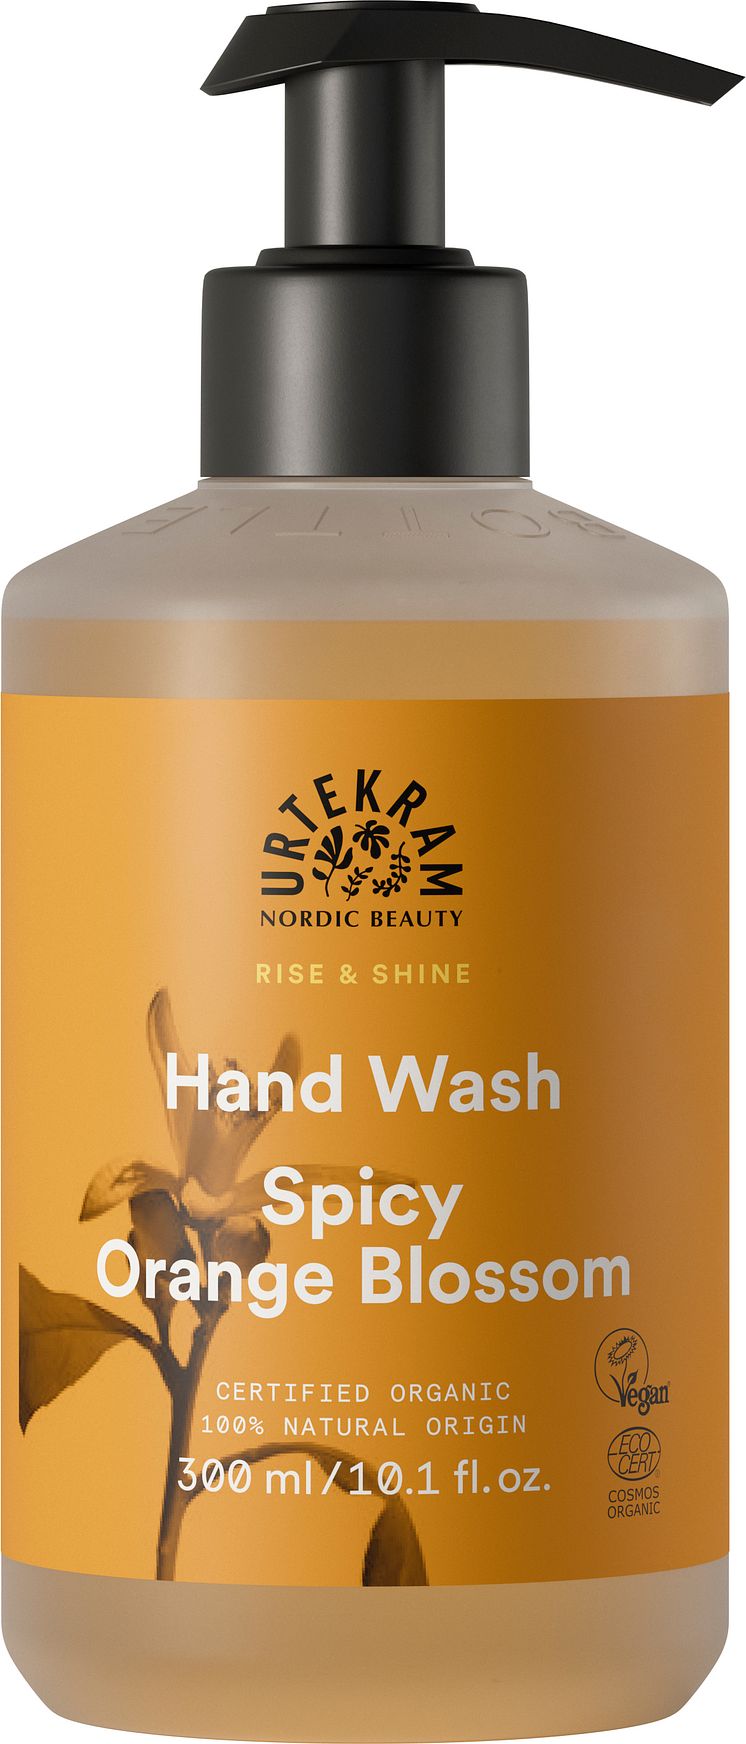 RISE & SHINE Hand Wash